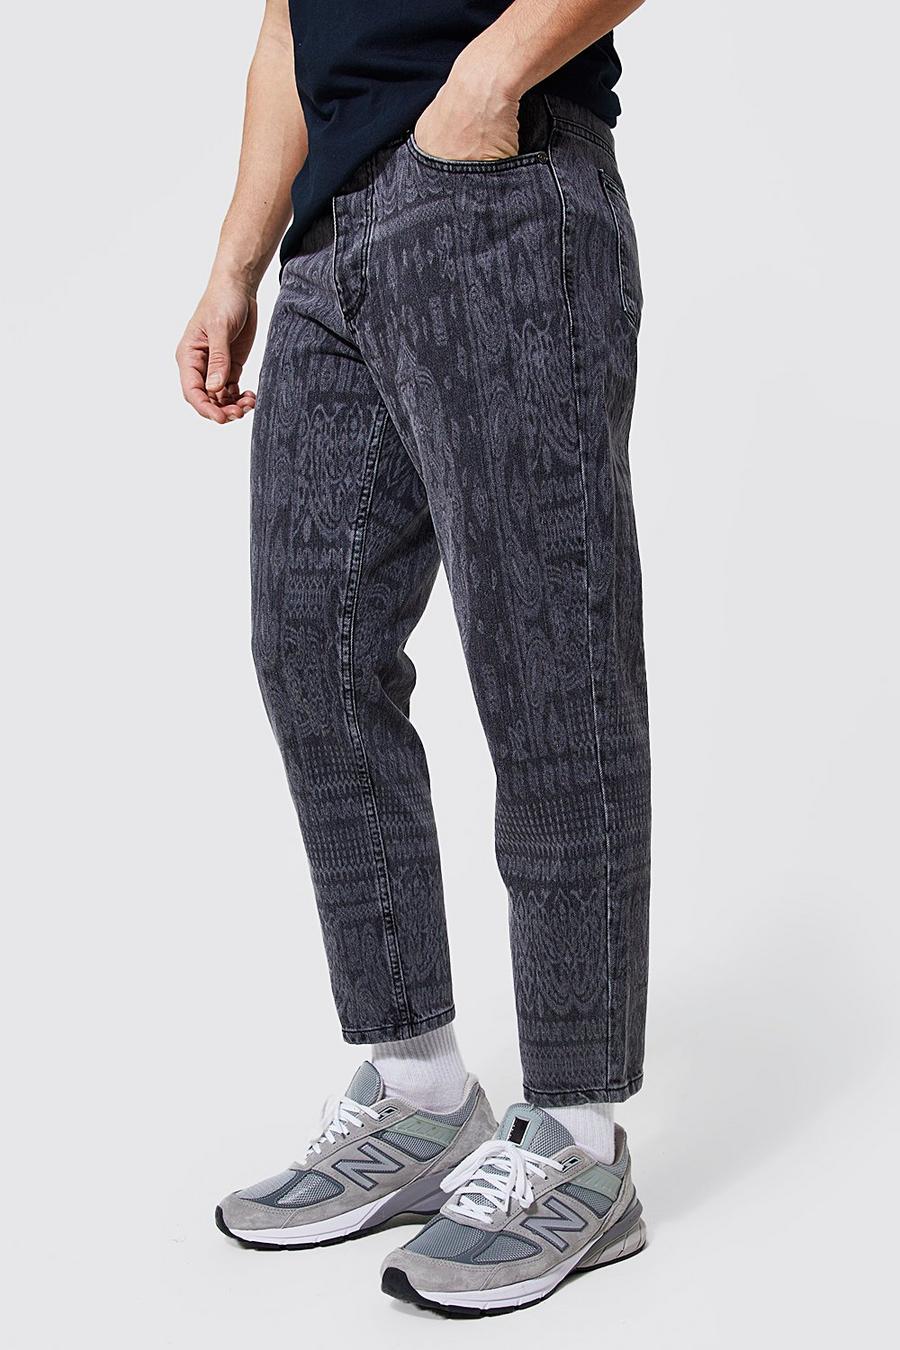 אפור ביניים ג'ינס בגזרת קרסול צרה מבד קשיח עם דוגמת בנדנה image number 1